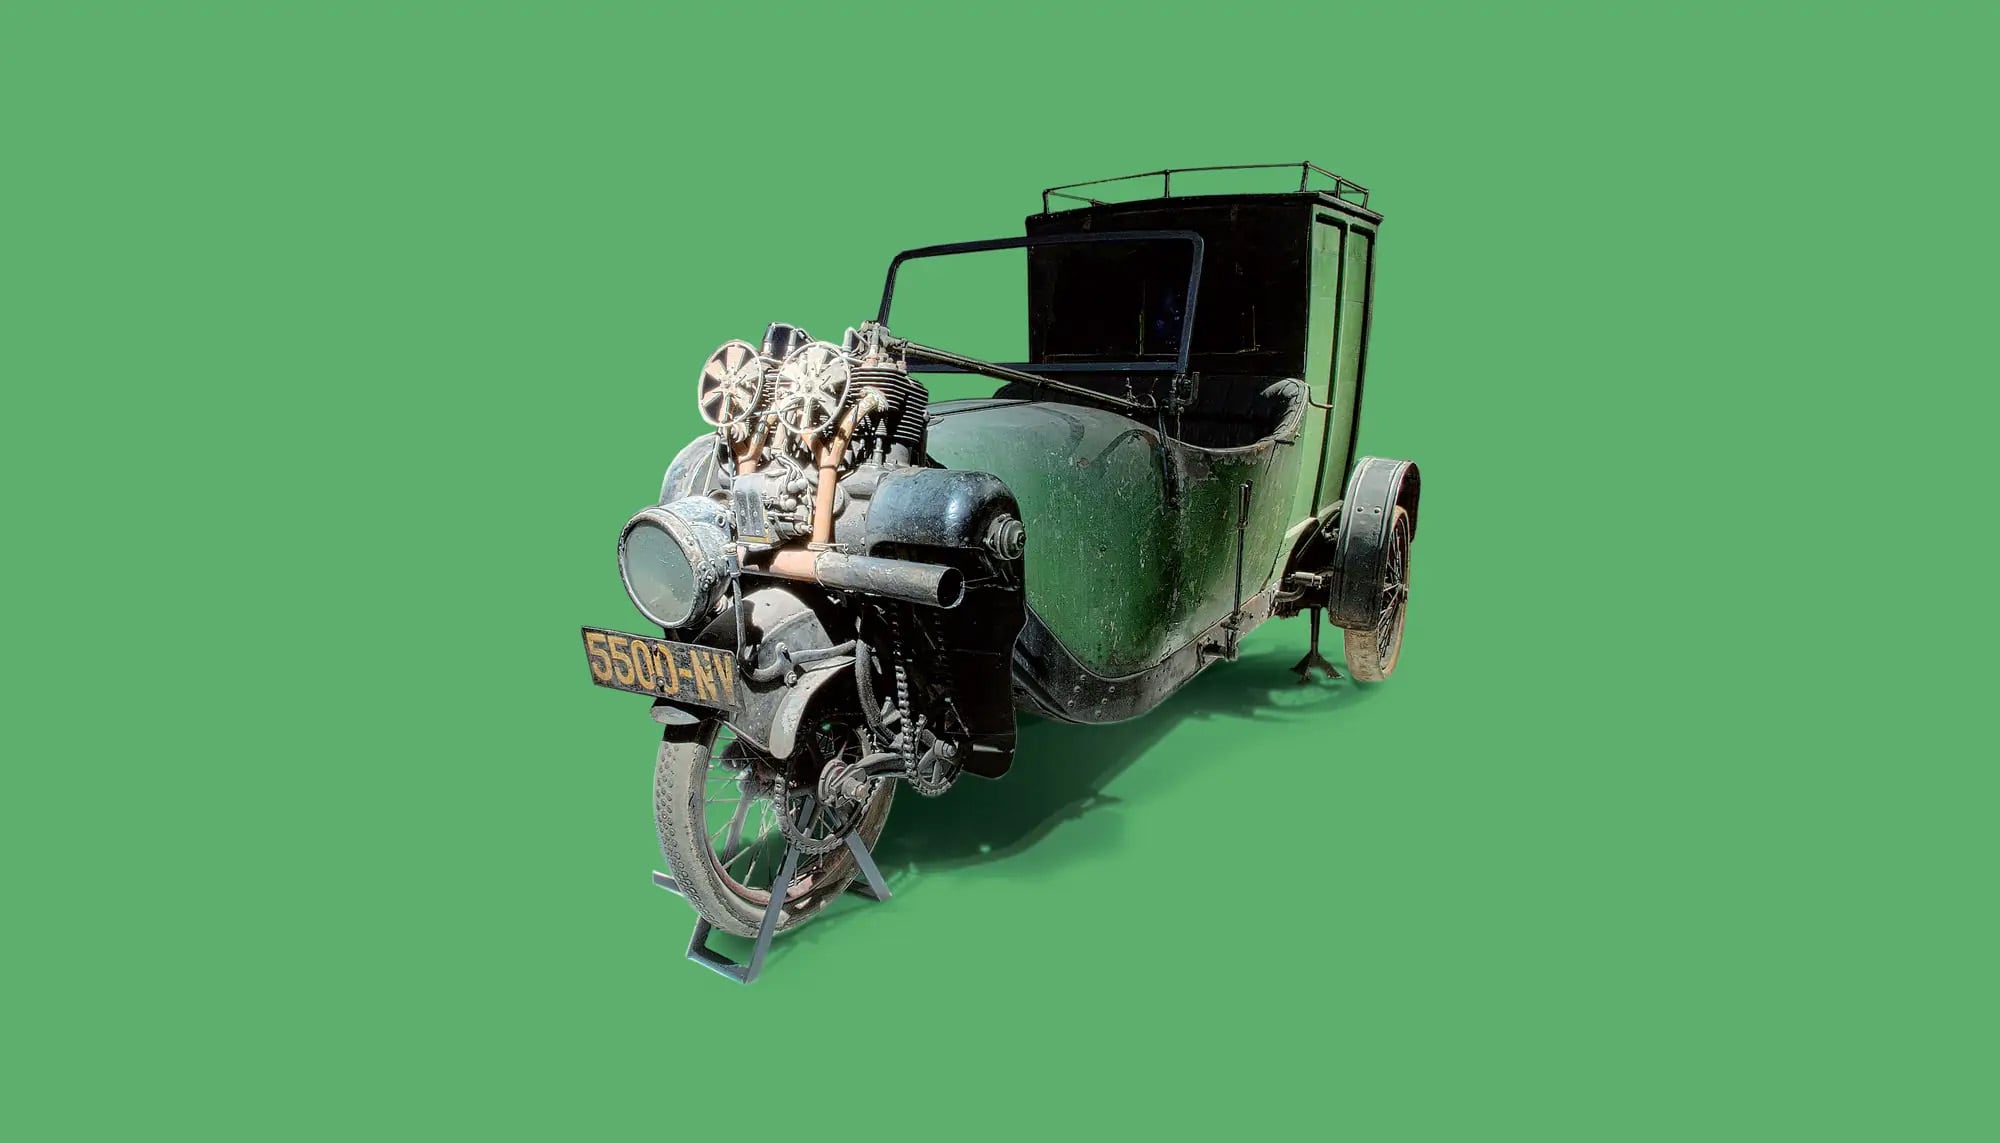 Bekijk Phanomobil Van in het Louwman Museum